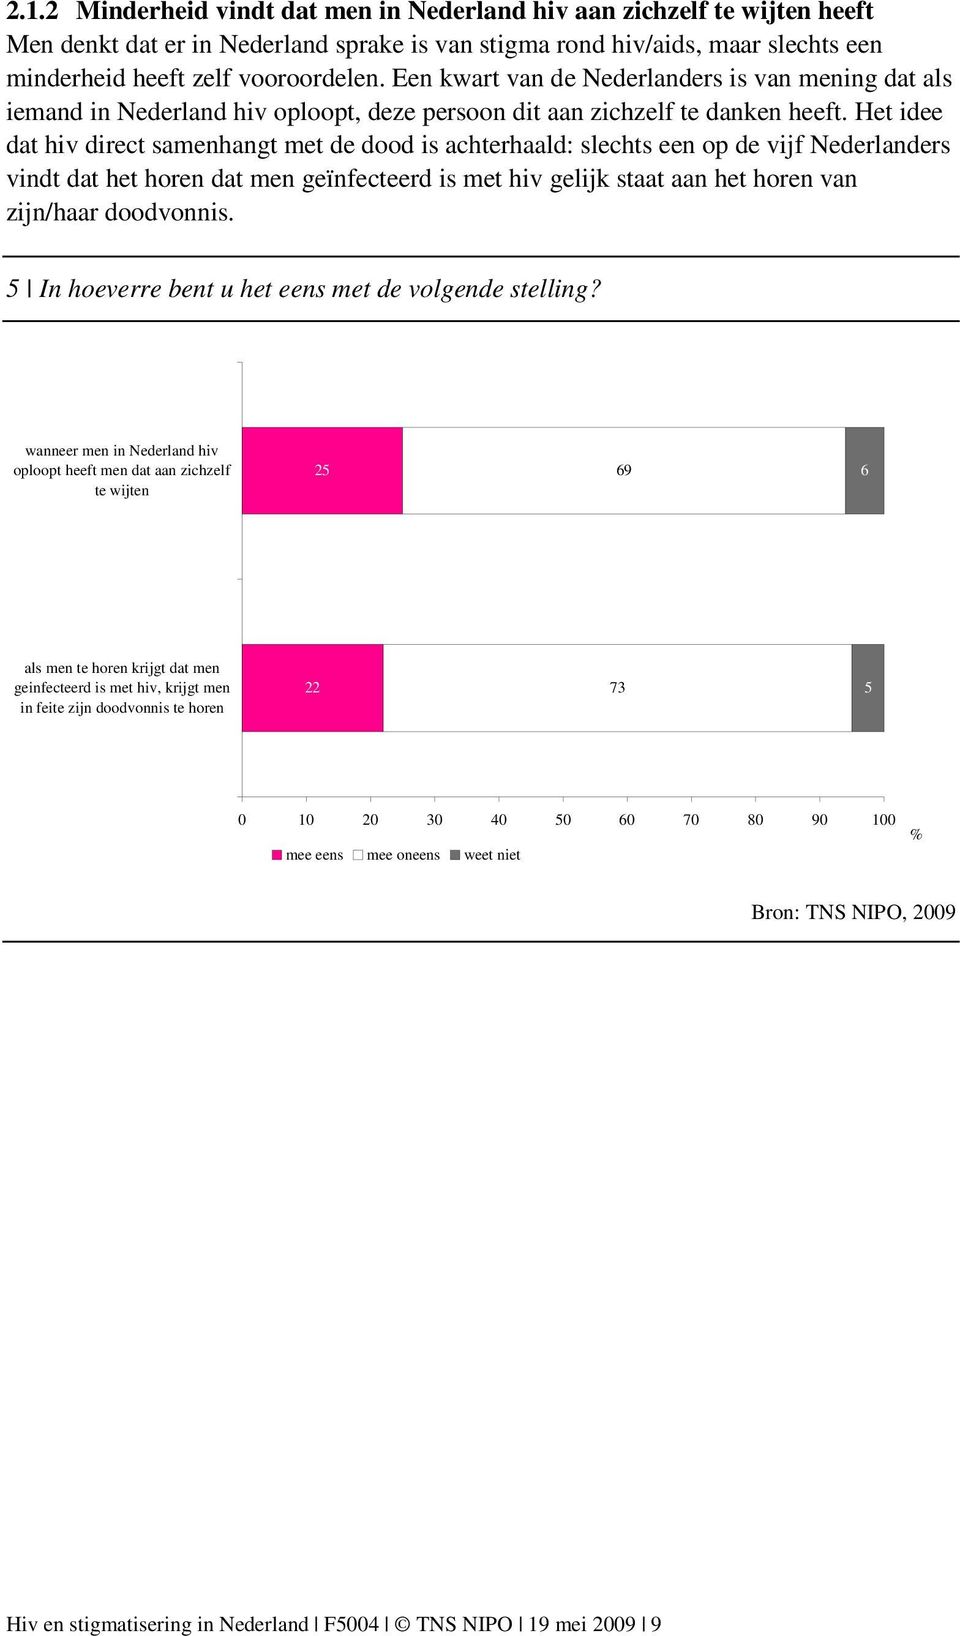 Het idee dat hiv direct samenhangt met de dood is achterhaald: slechts een op de vijf Nederlanders vindt dat het horen dat men geïnfecteerd is met hiv gelijk staat aan het horen van zijn/haar